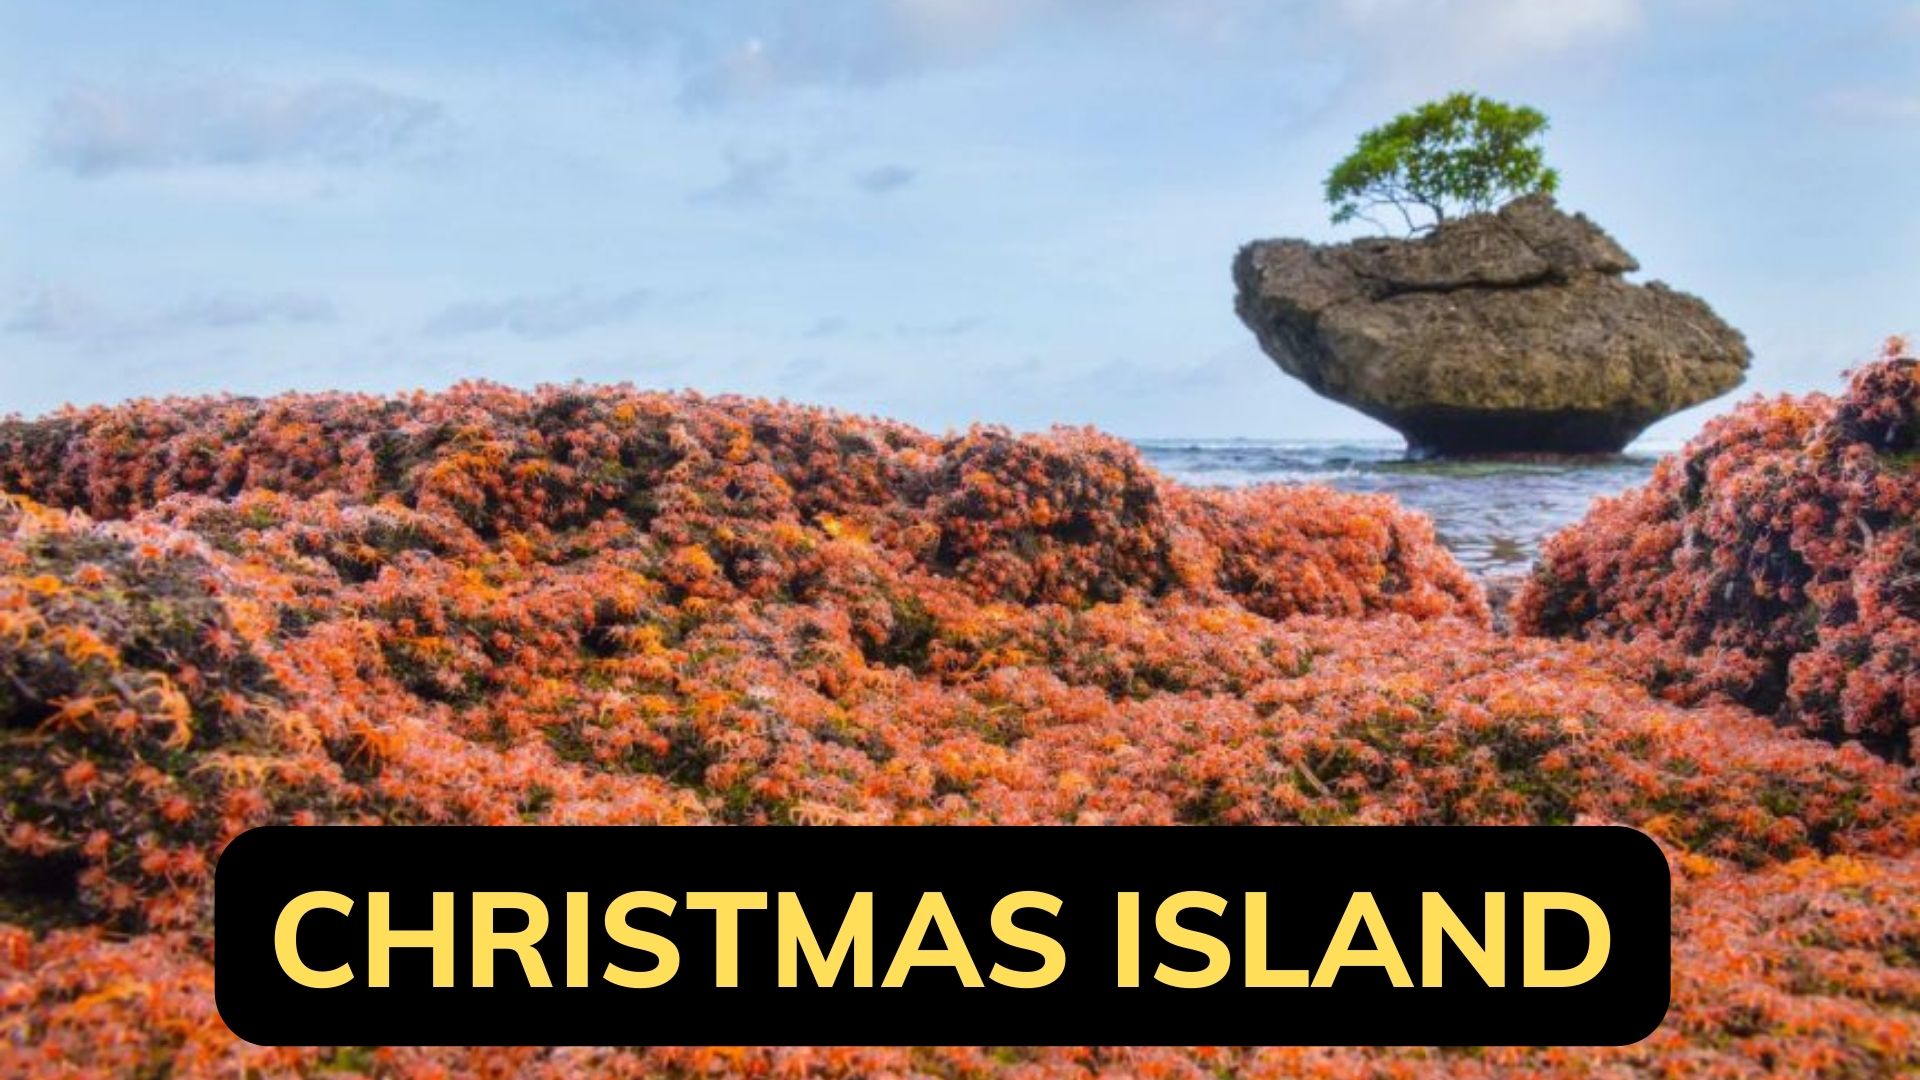 Christmas Island - An Amazing Ecotourism Destination